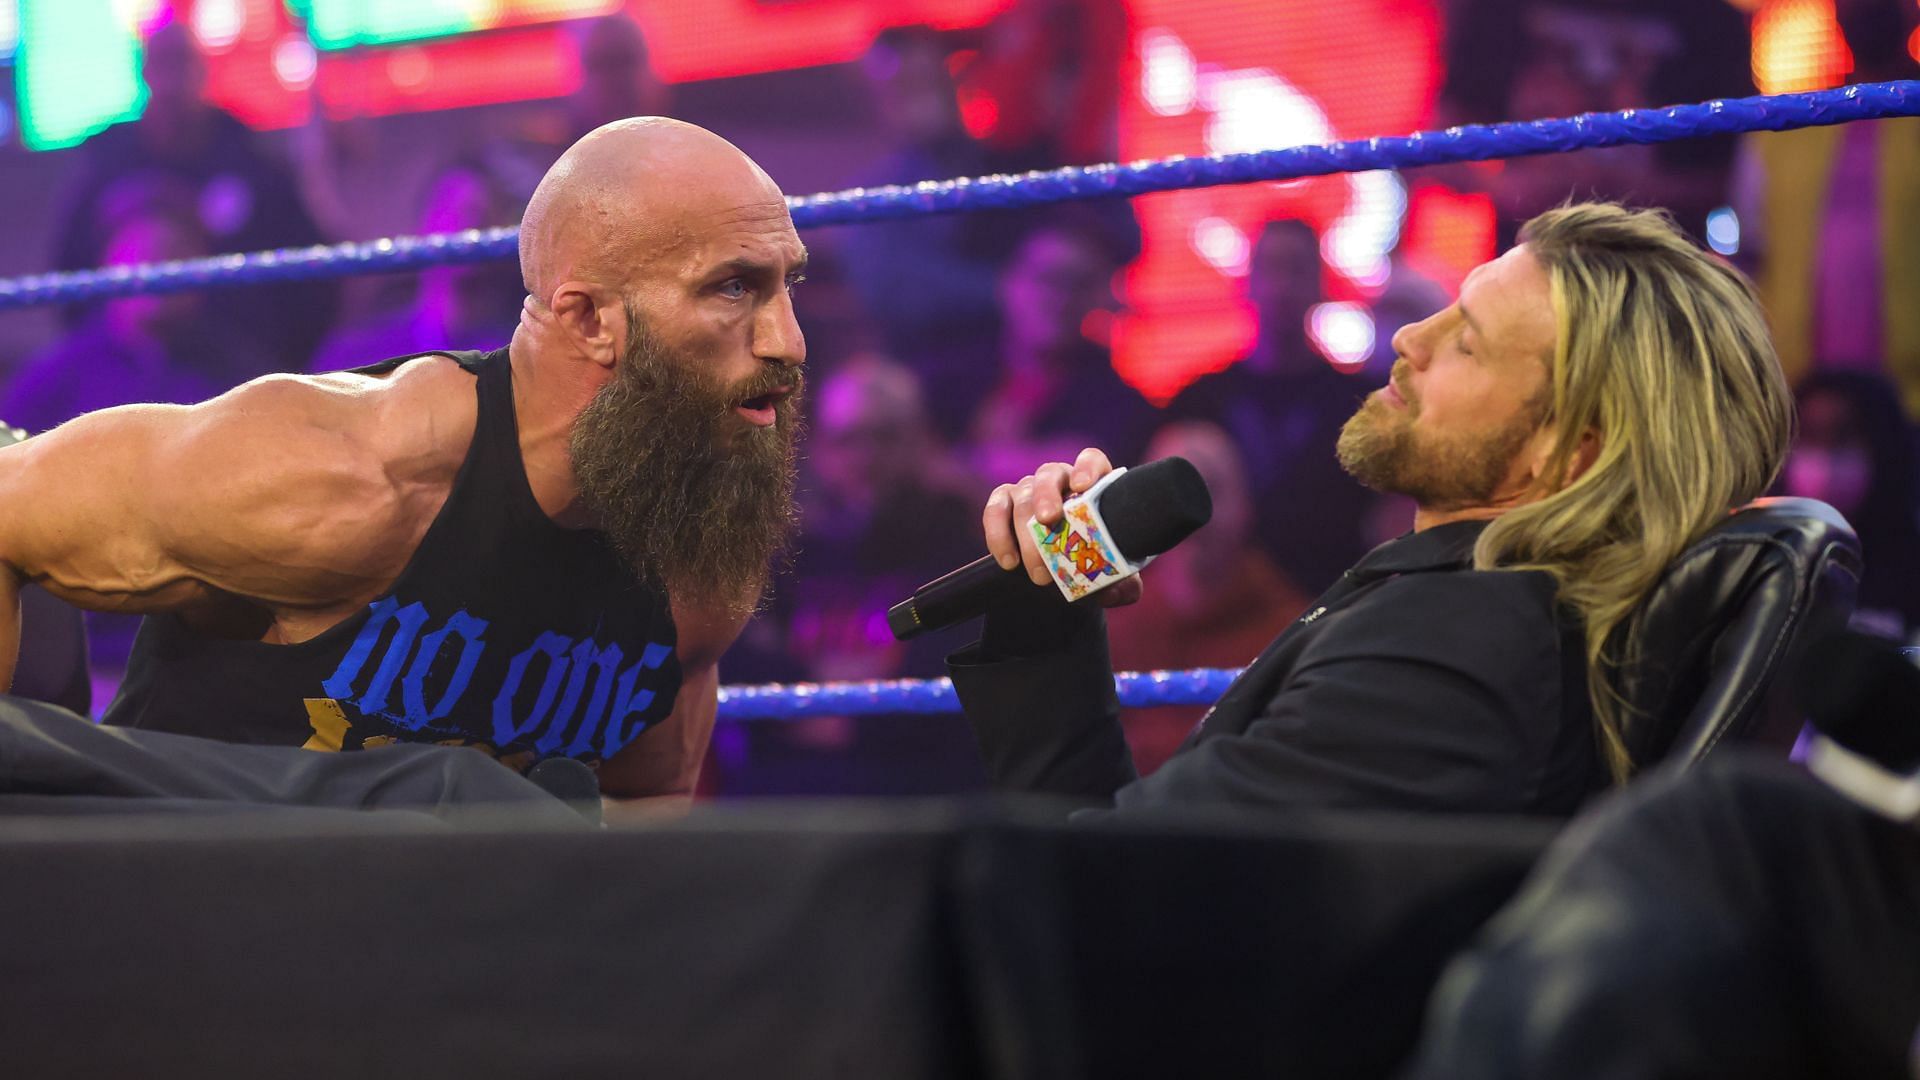 WWE NXT के हालिया एपिसोड में नजर आए थे डॉल्फ जिगलर